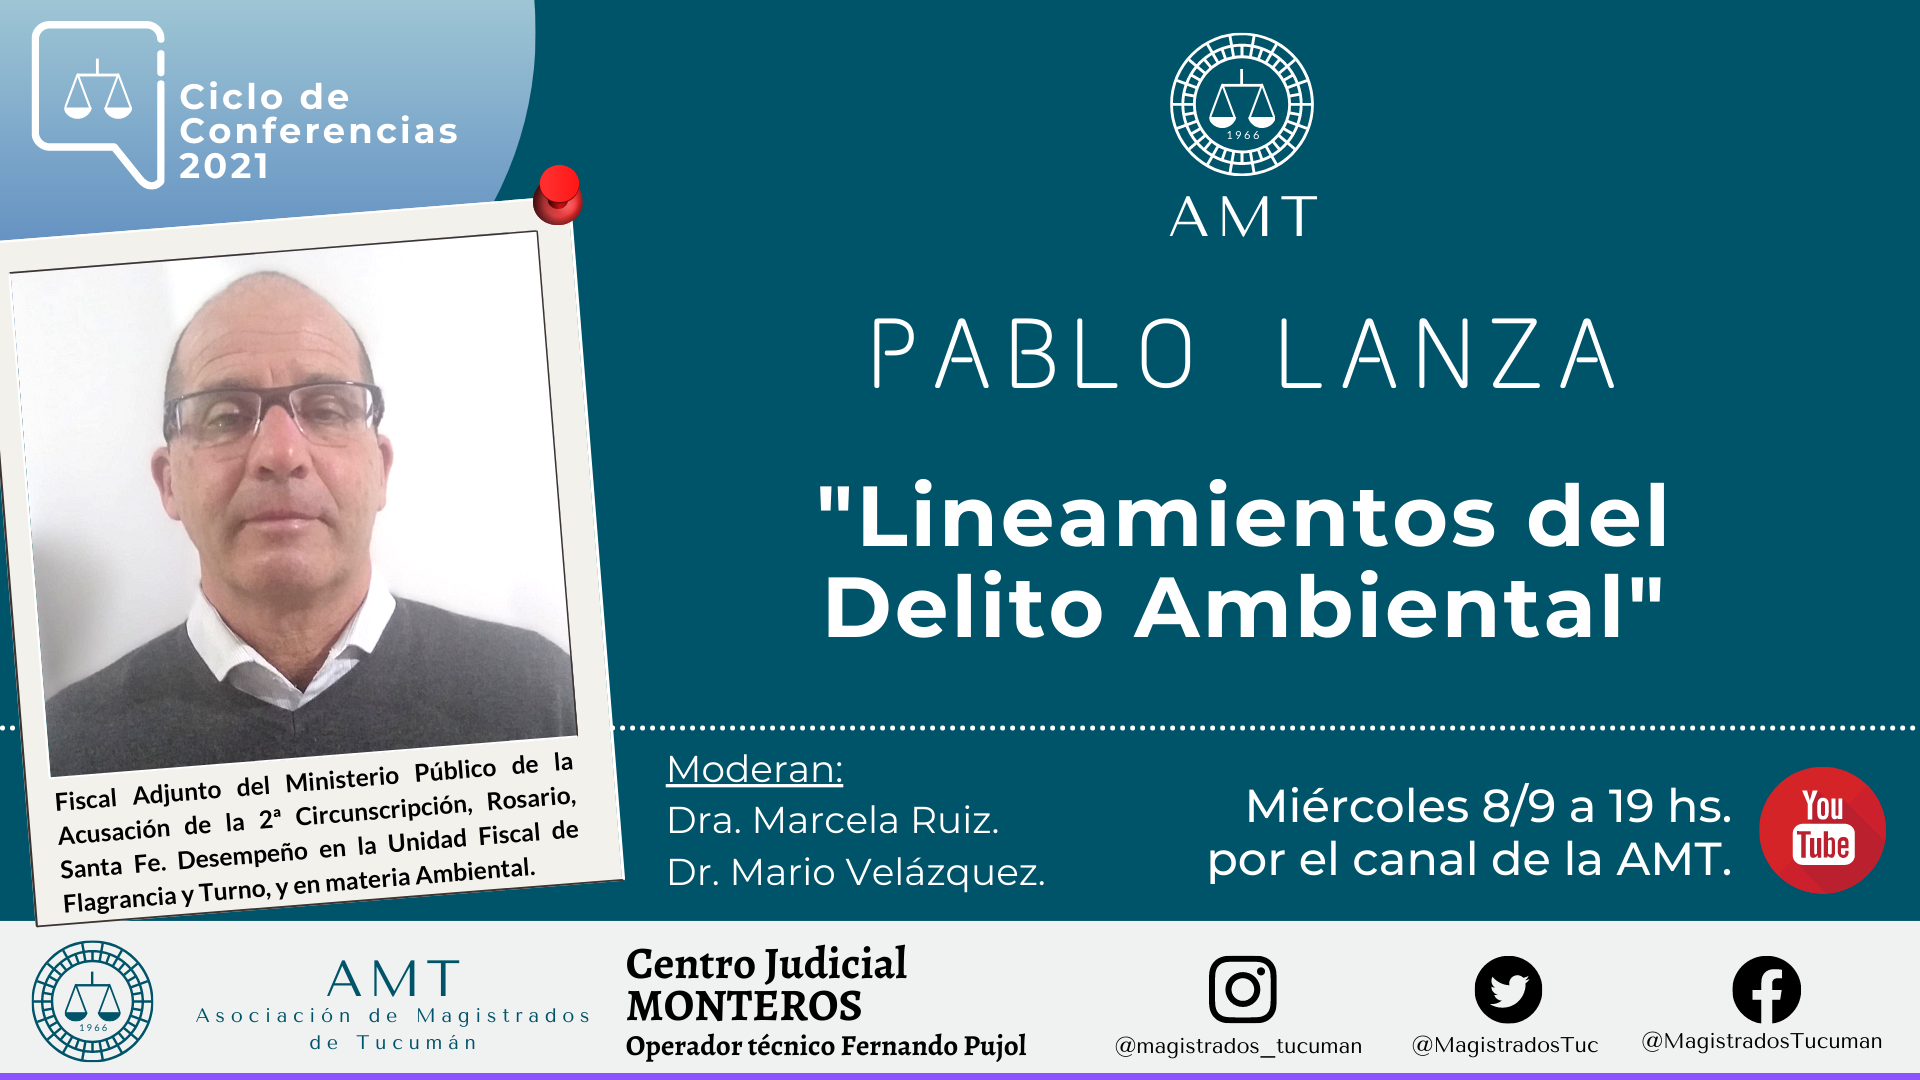 Vuelva a ver la conferencia de Pablo Lanza «Lineamientos del Delito Ambiental»